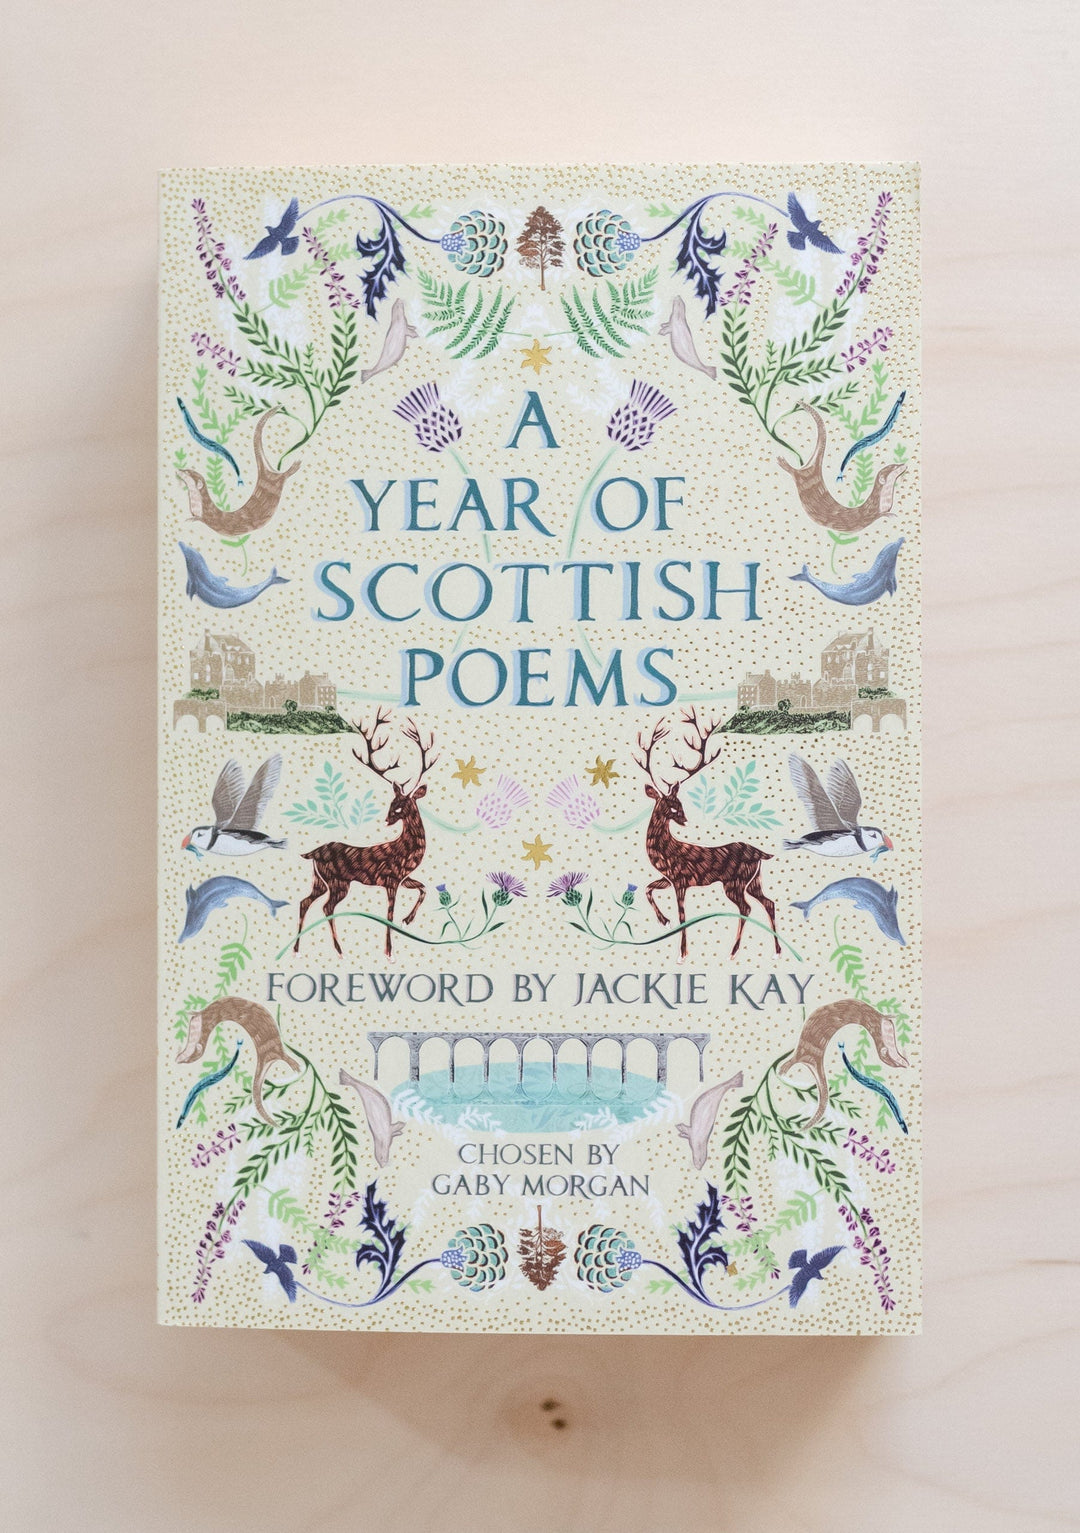 Une année de poèmes écossais